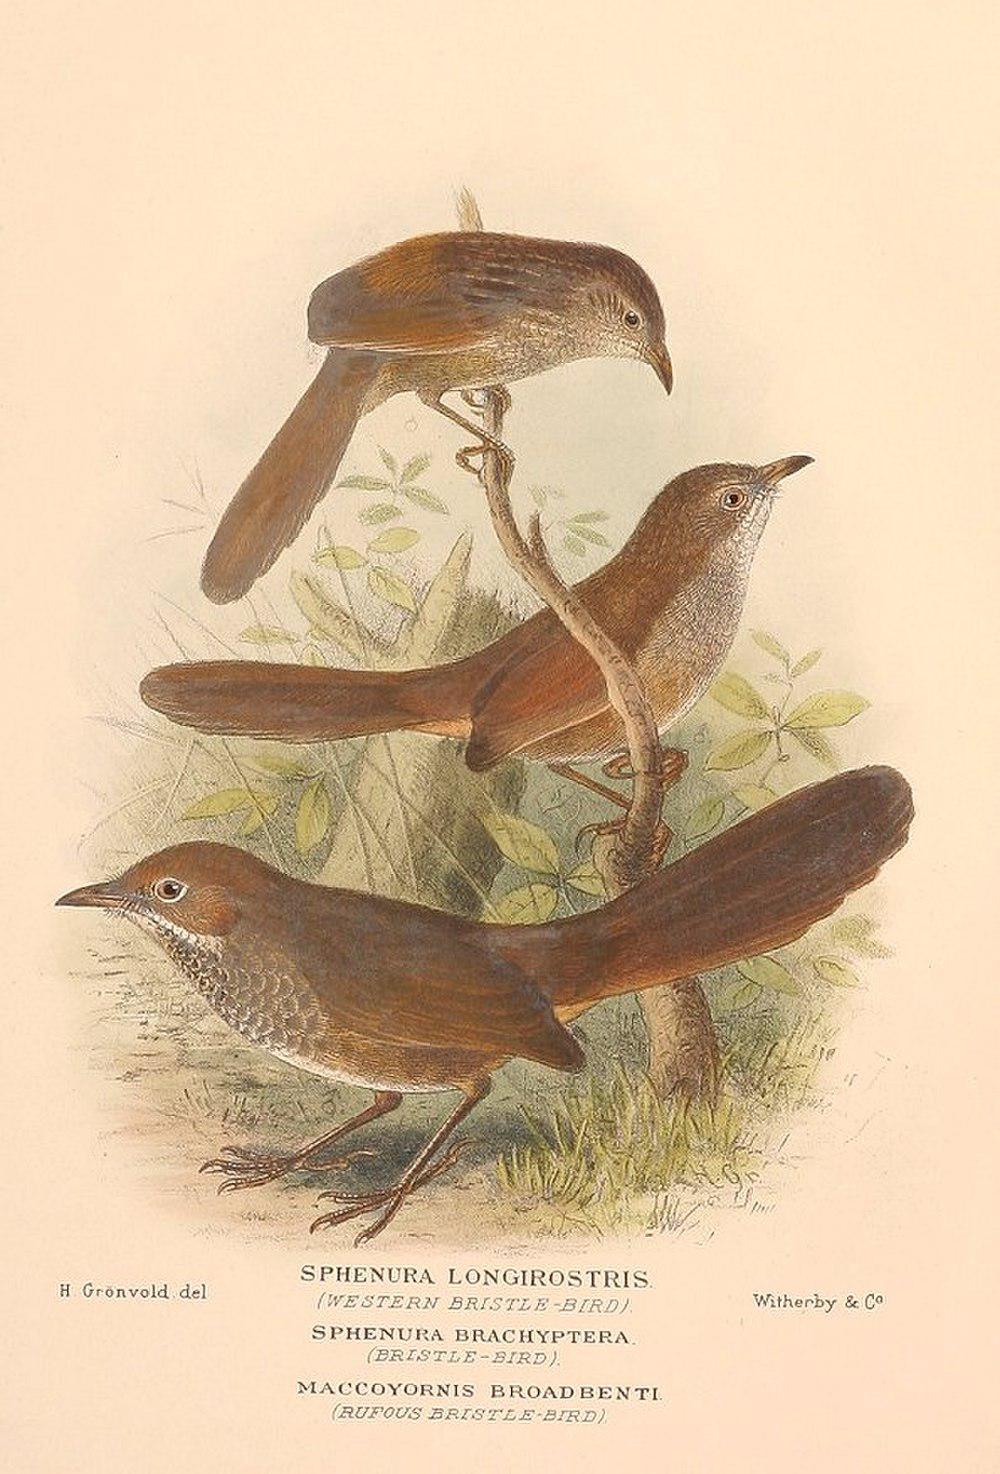 棕刺莺 / Eastern Bristlebird / Dasyornis brachypterus